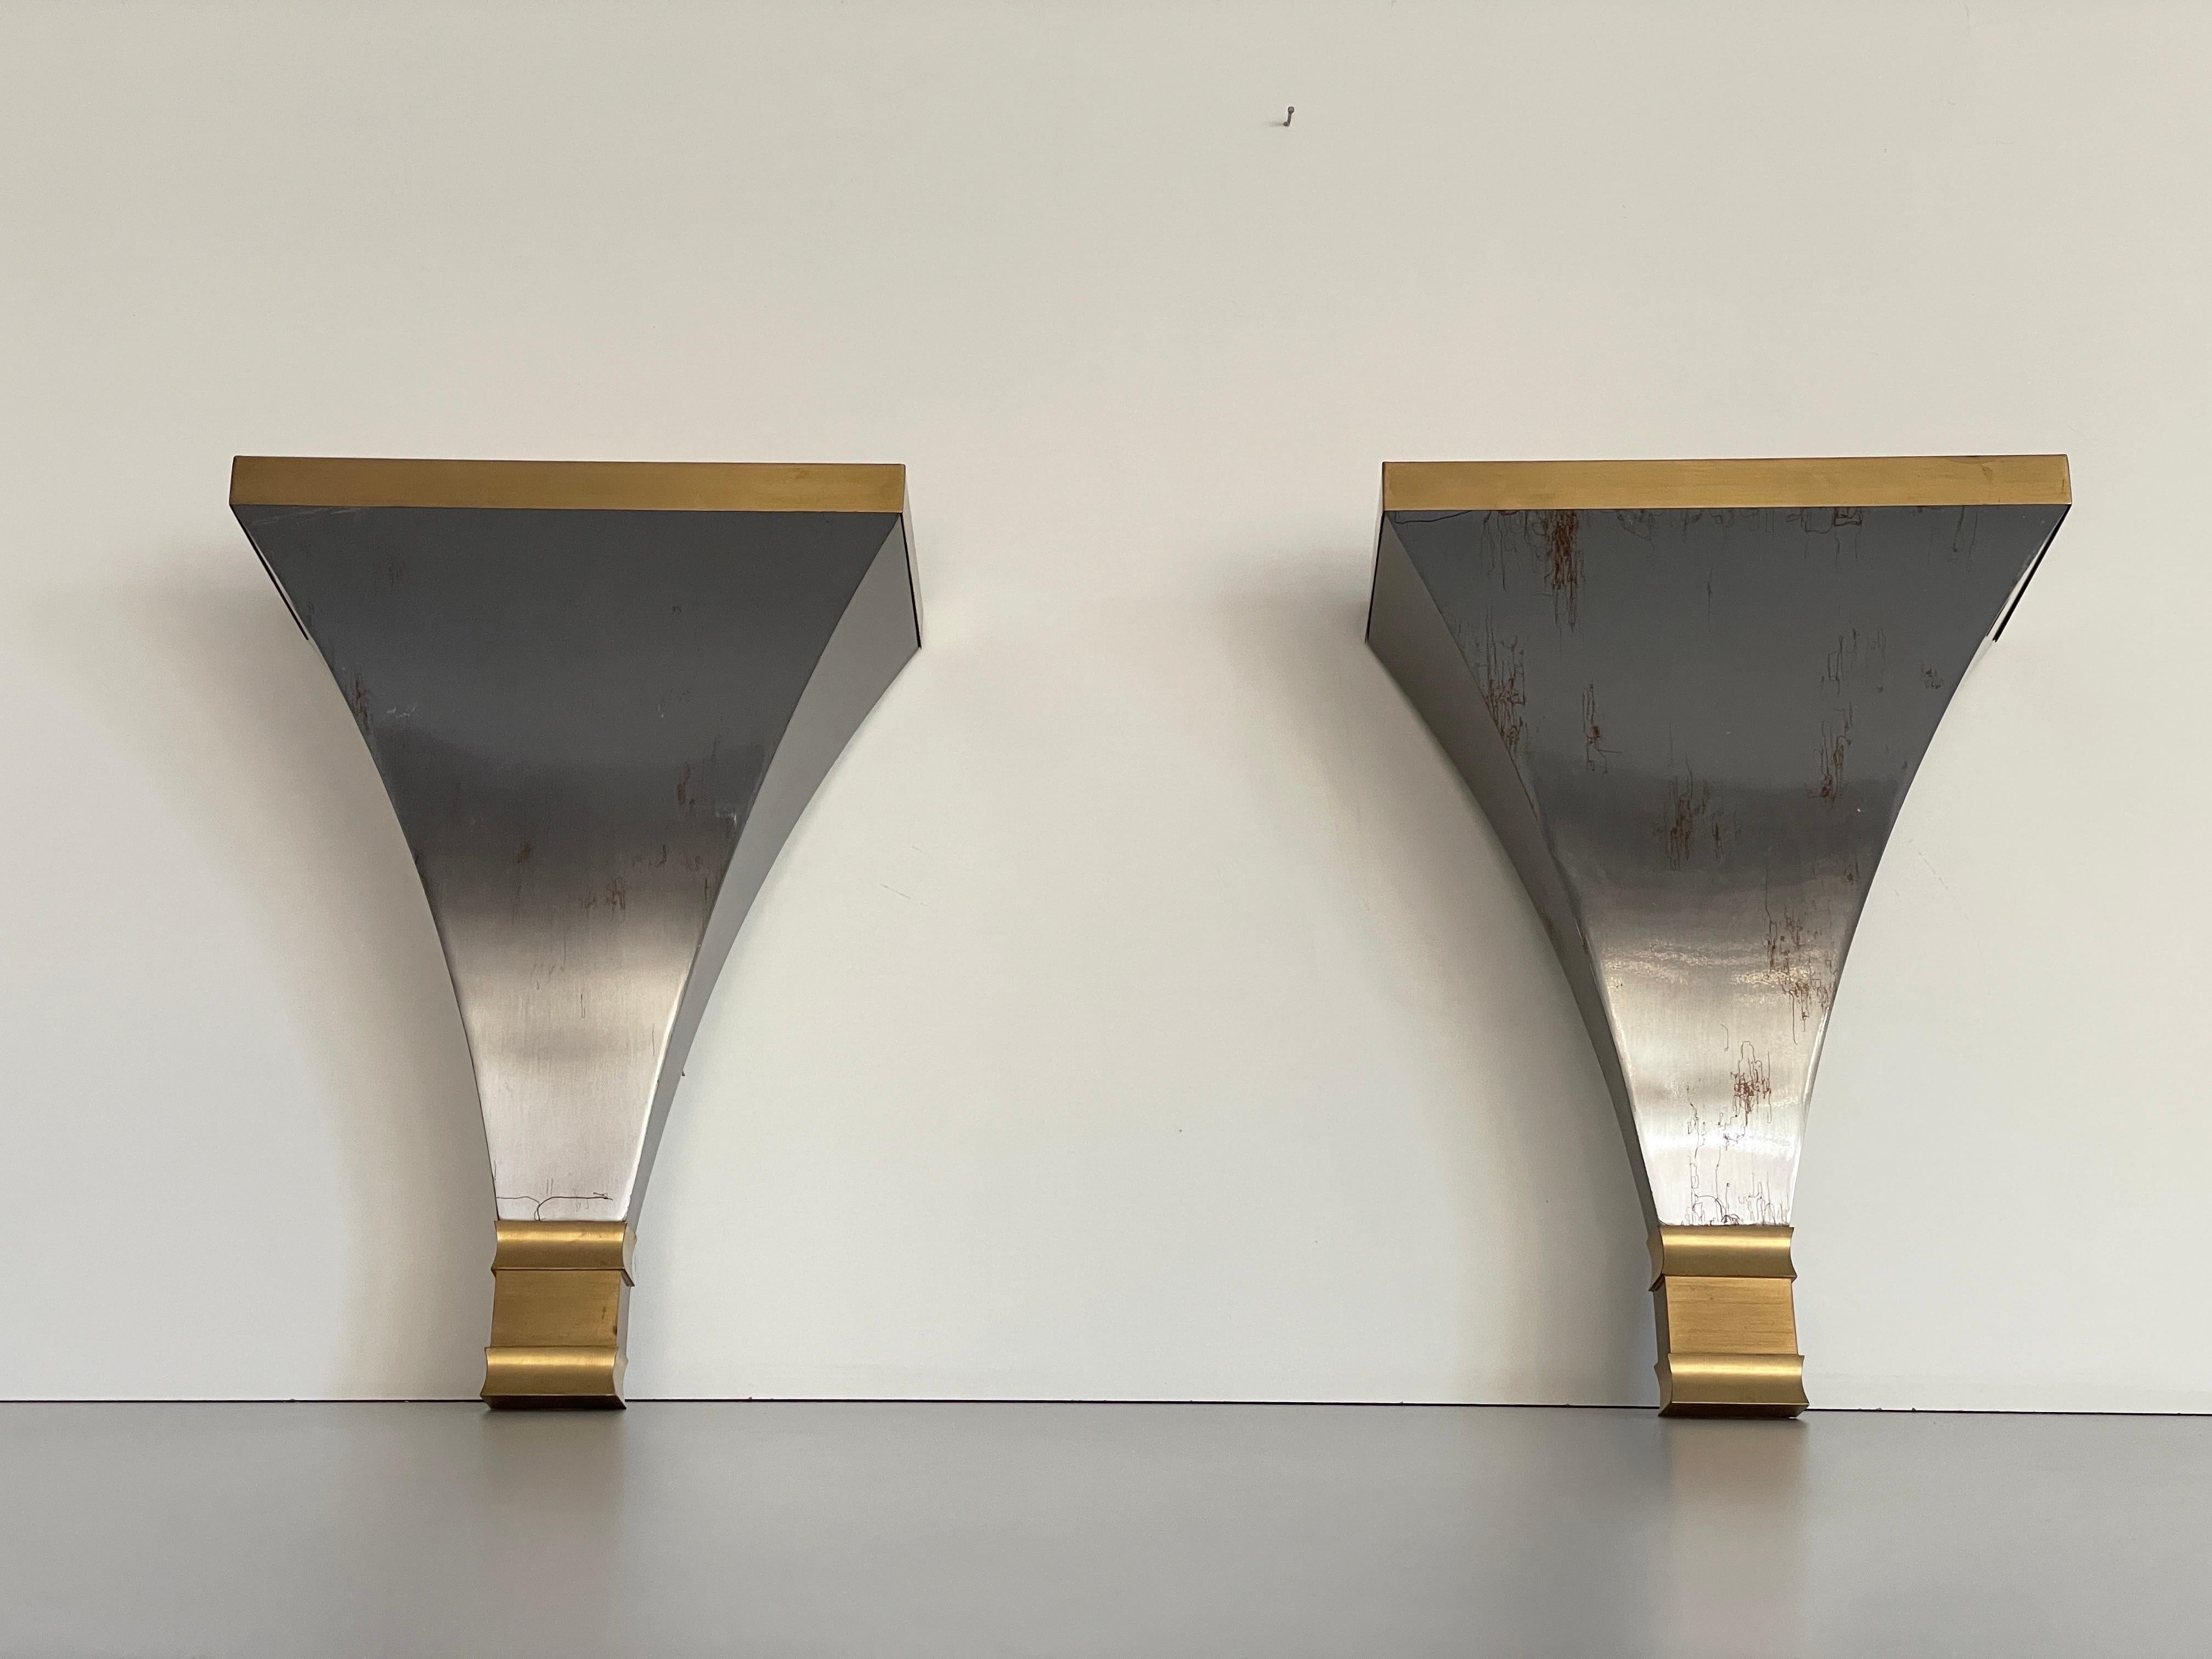 Paar Wandleuchter aus grauem und goldenem Metall von Art-Line, 1980er Jahre, Deutschland

Sehr elegante und minimalistische Wandleuchter

Die Lampen sind in sehr gutem Zustand.

Diese Lampen funktionieren mit französischen B22-Glühbirnen. 
Verkabelt